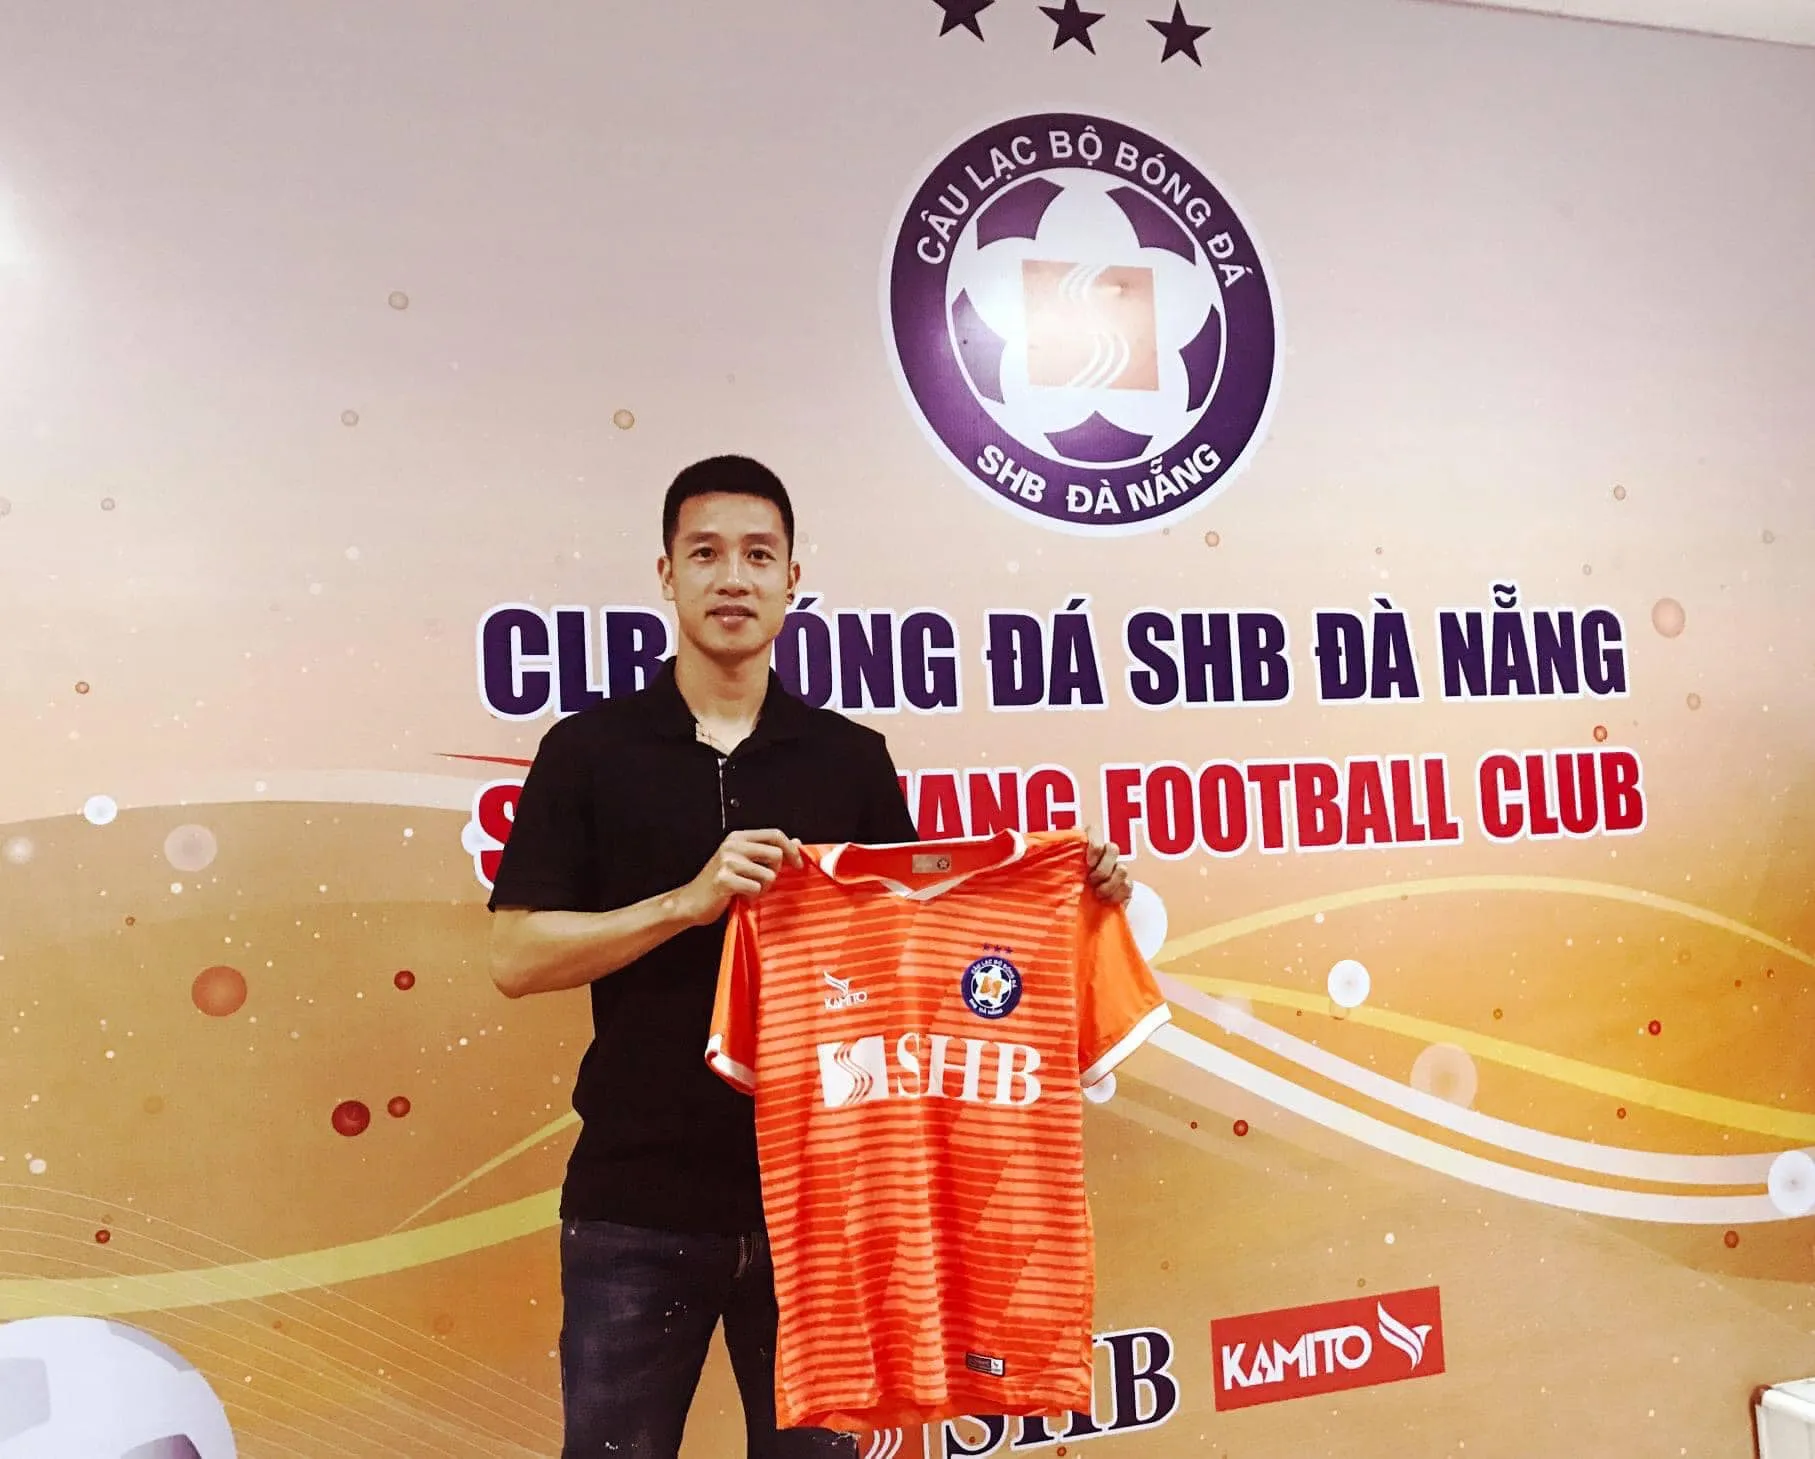 Huy Hùng chính thức gia nhập CLB SHB Đà Nẵng